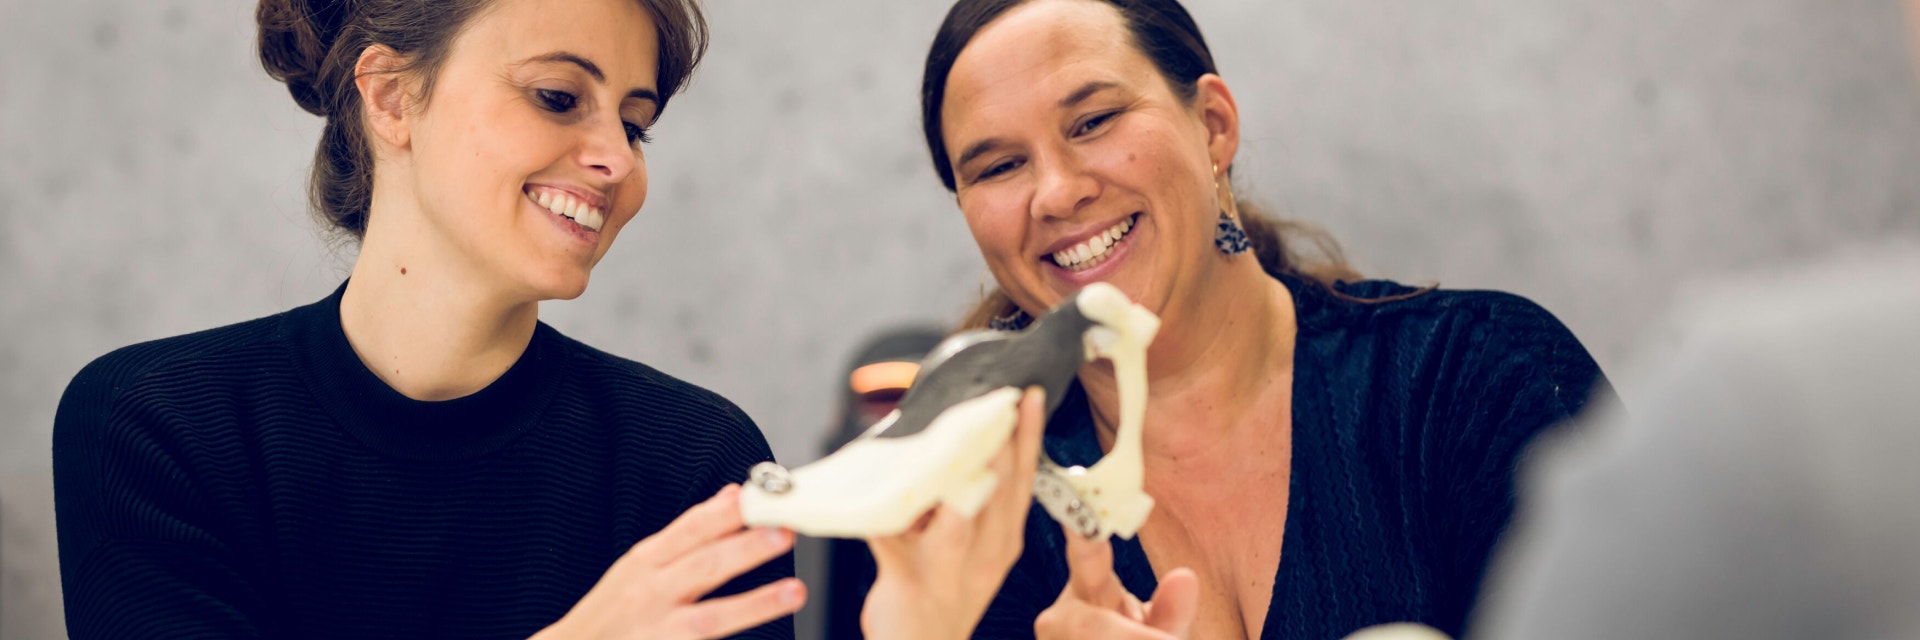 Zwei Frauen lächeln und betrachten ein 3D-gedrucktes Teil